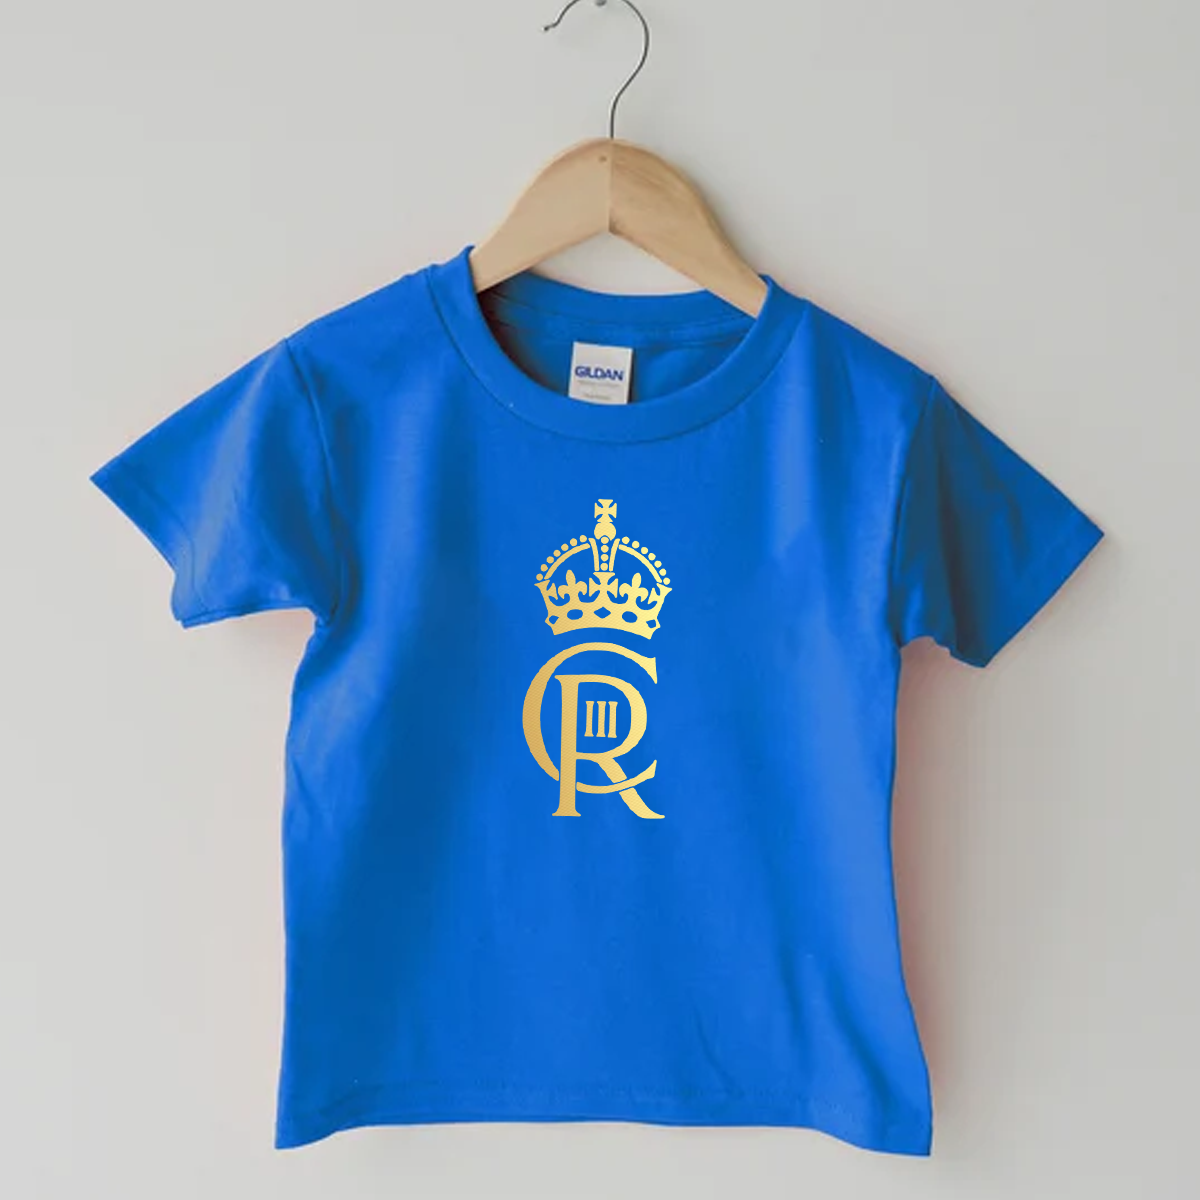 Royal Blue His Royal Highness King Charles III Emblem Coronation Day T-Shirt